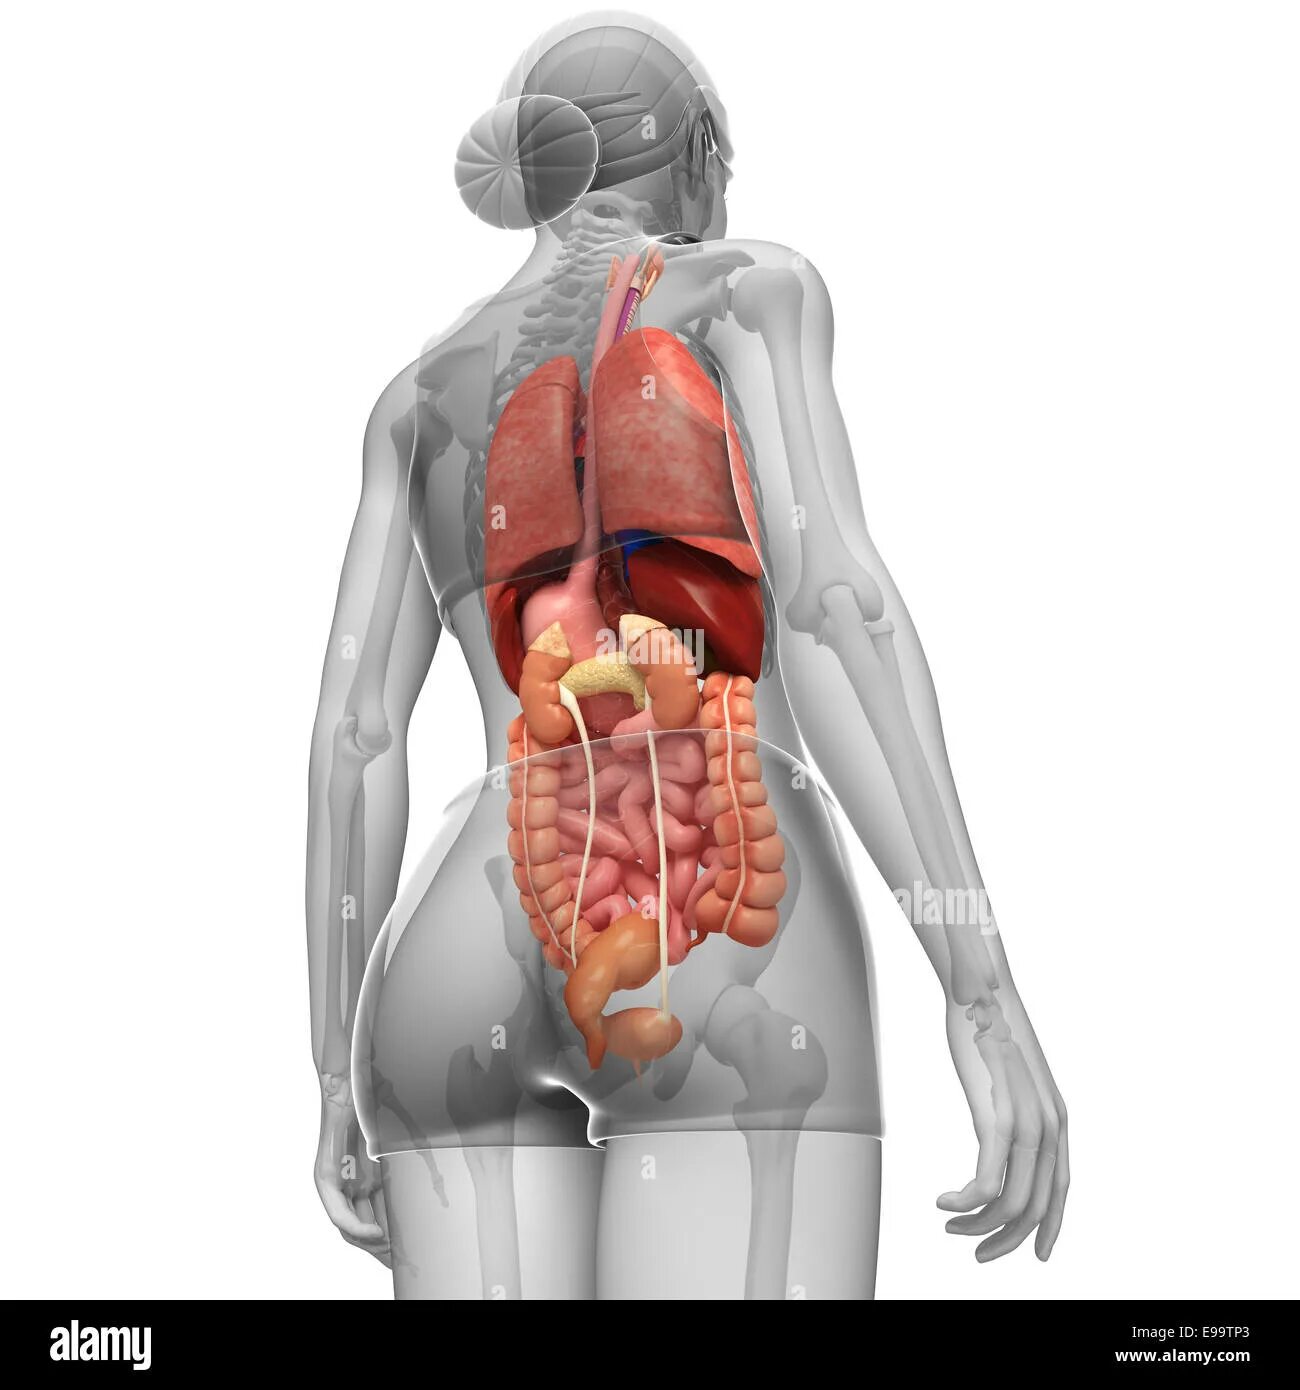 Строение человека внутренние со спины. Внутренние органы человека со спины. Расположение внутренних органов человека со спины. Внутренние органы человека со спины женщины. Анатомия человека со спины органы.